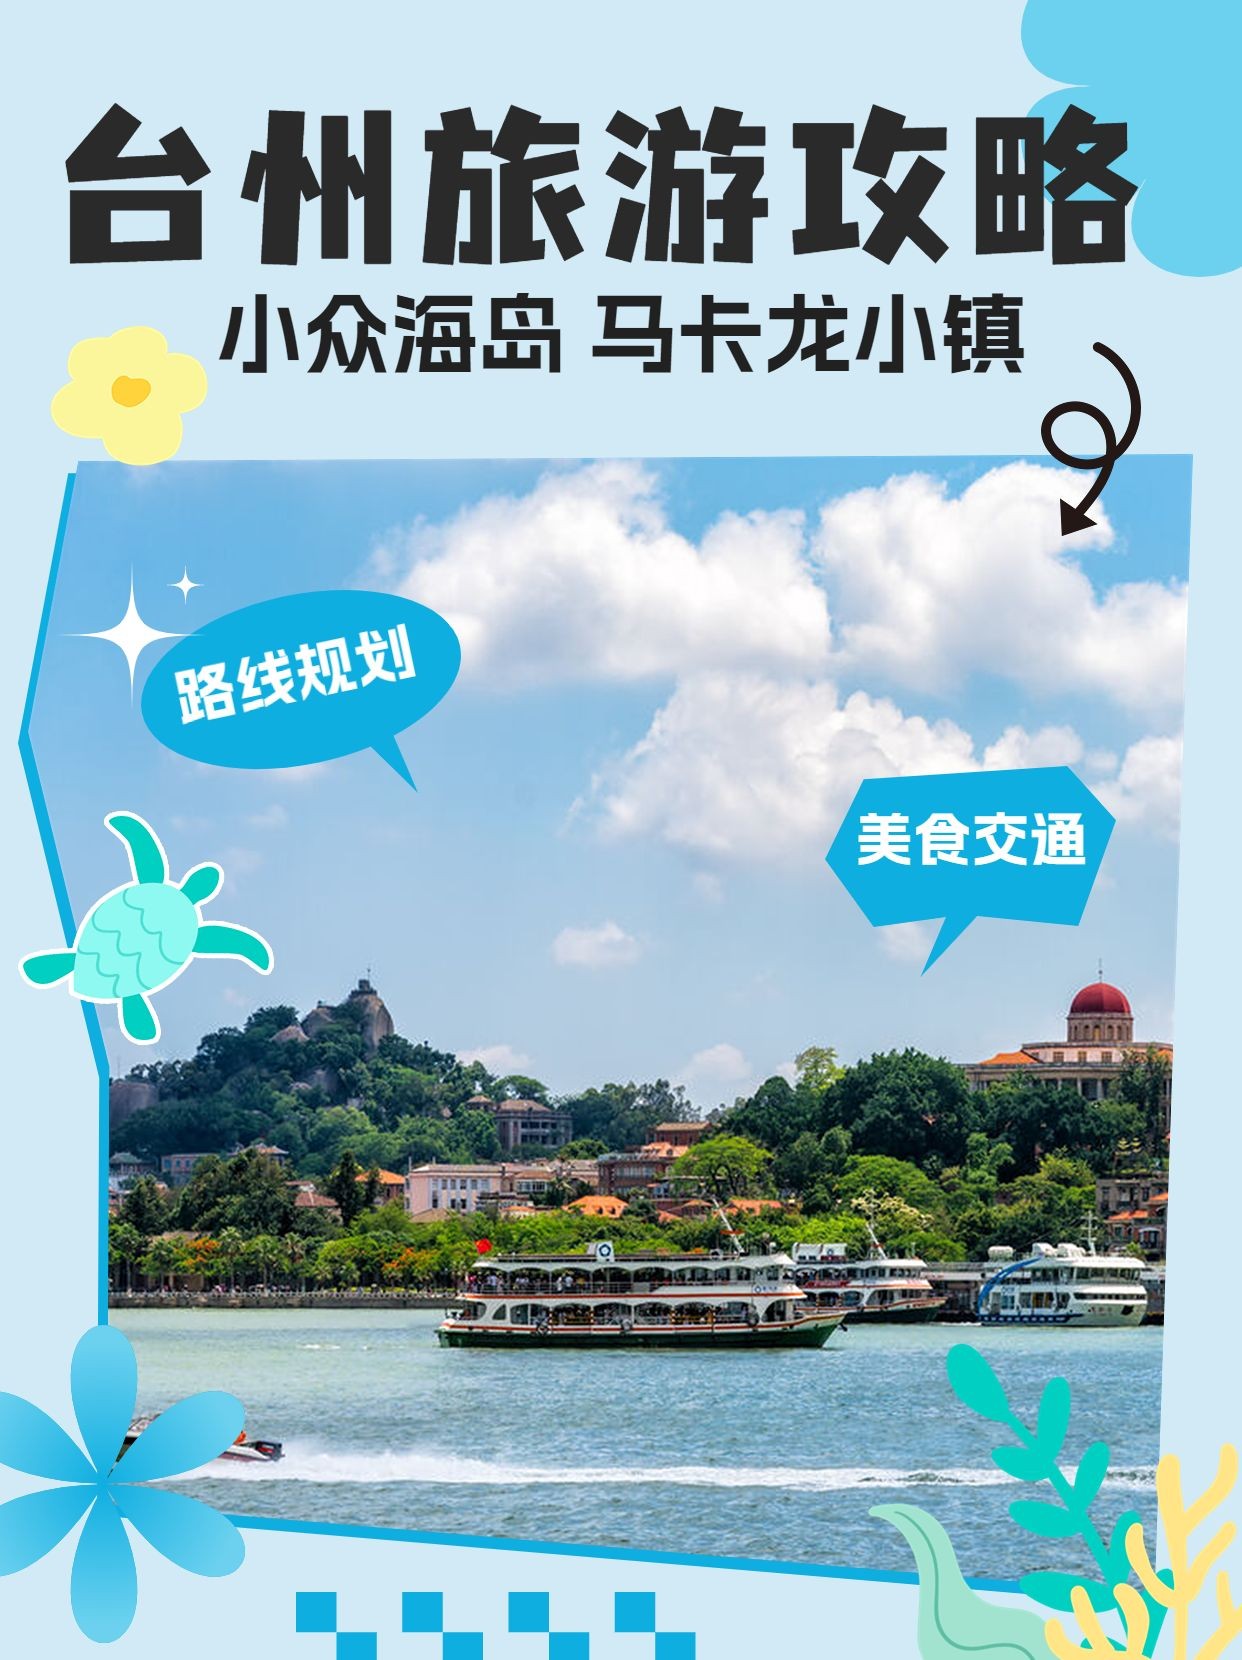 旅游台州小众海岛出行攻略小红书封面预览效果